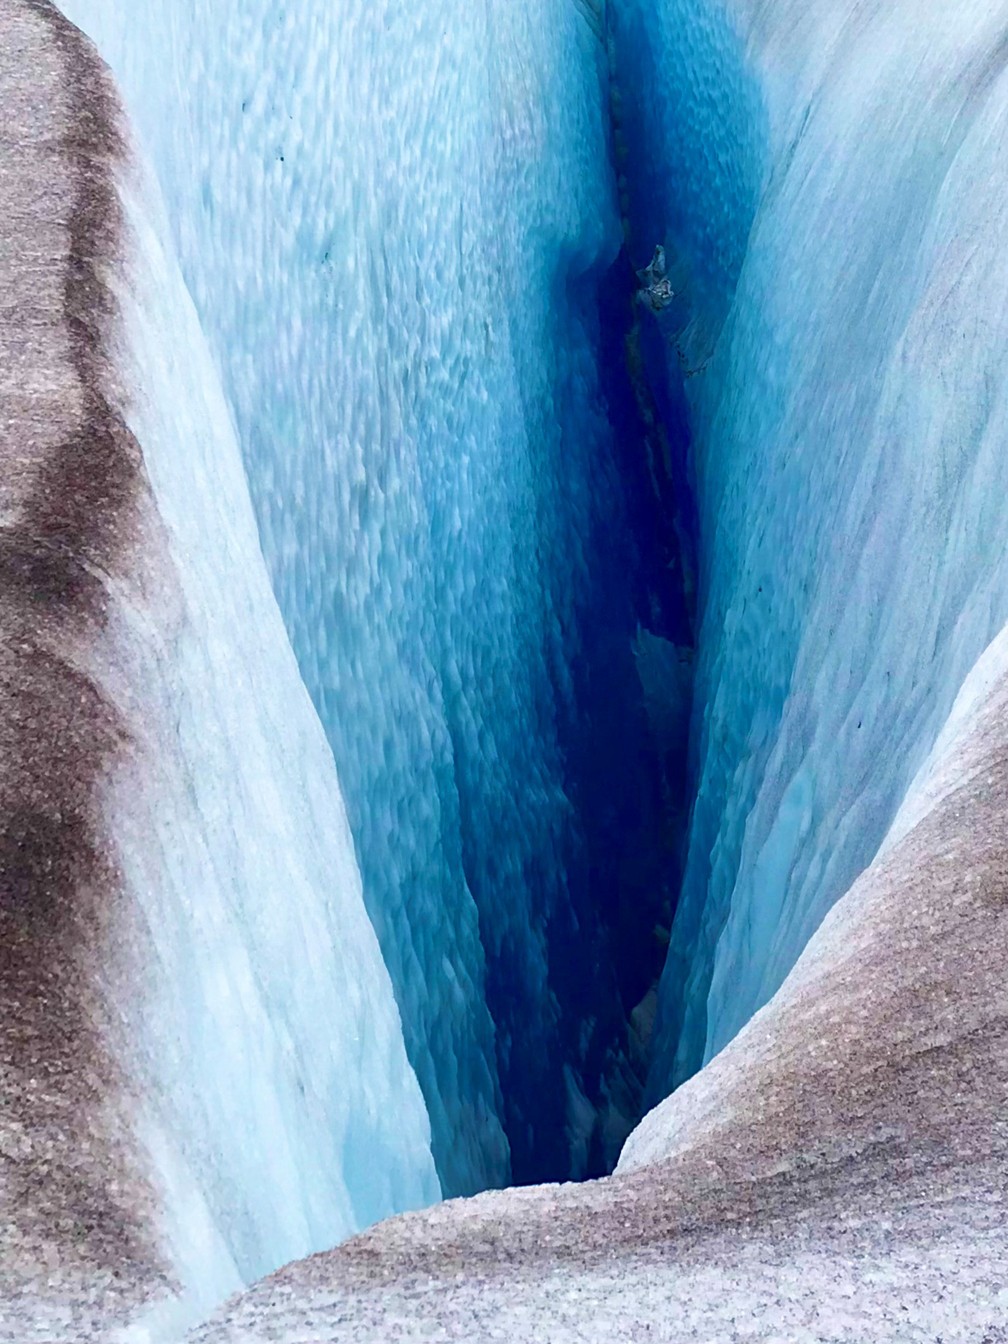 'Abstrato da geleira', de Neil Nesheim, ficou com o 2º lugar na categoria 'Abstrato'. Foto tirada no Alasca — Foto: Neil Nesheim/iPhone Photography Awards